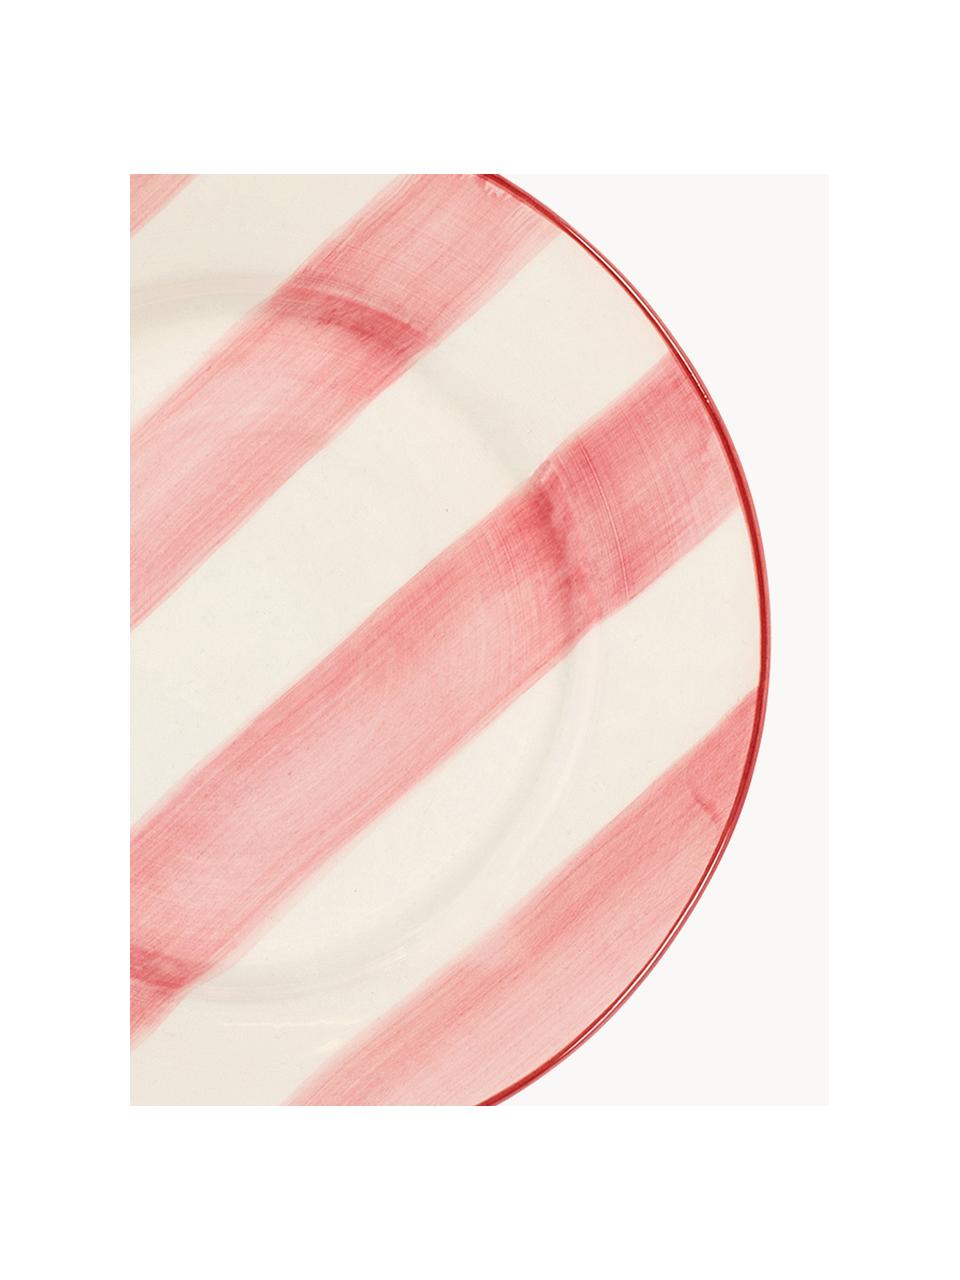 Piatto piano dipinto a mano Posy, Ceramica, Bianco latte, rosso corallo, Ø 29 cm